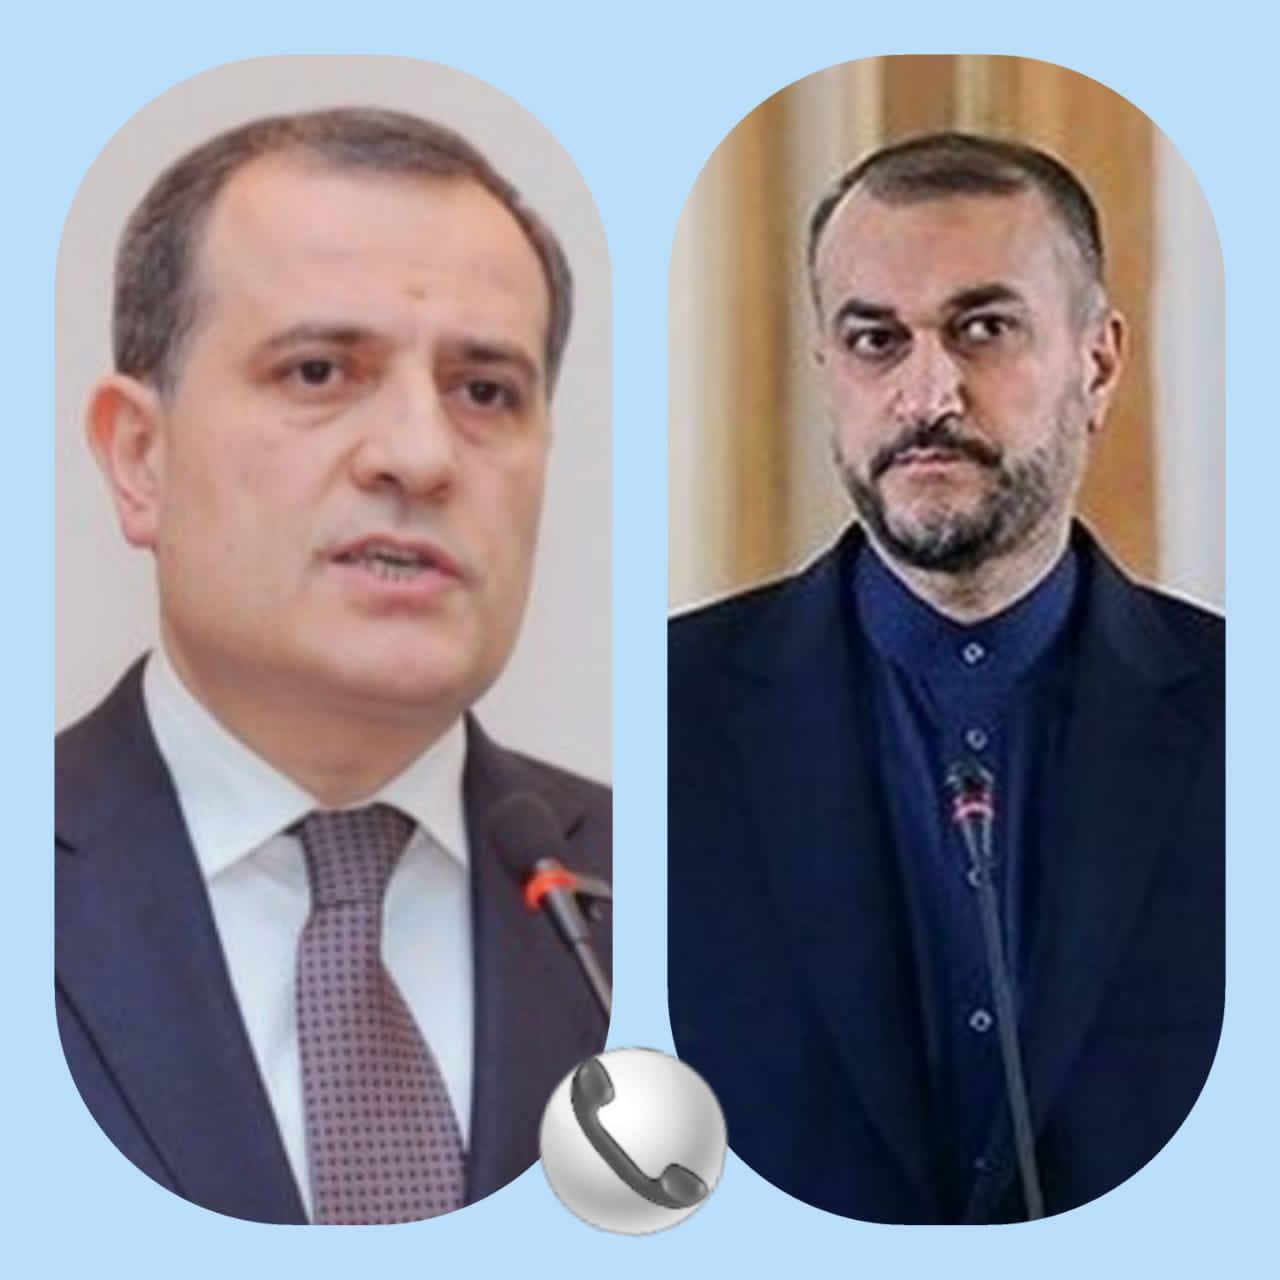 گفت‌وگوی تلفنی وزرای امور خارجه ایران و جمهوری آذربایجان